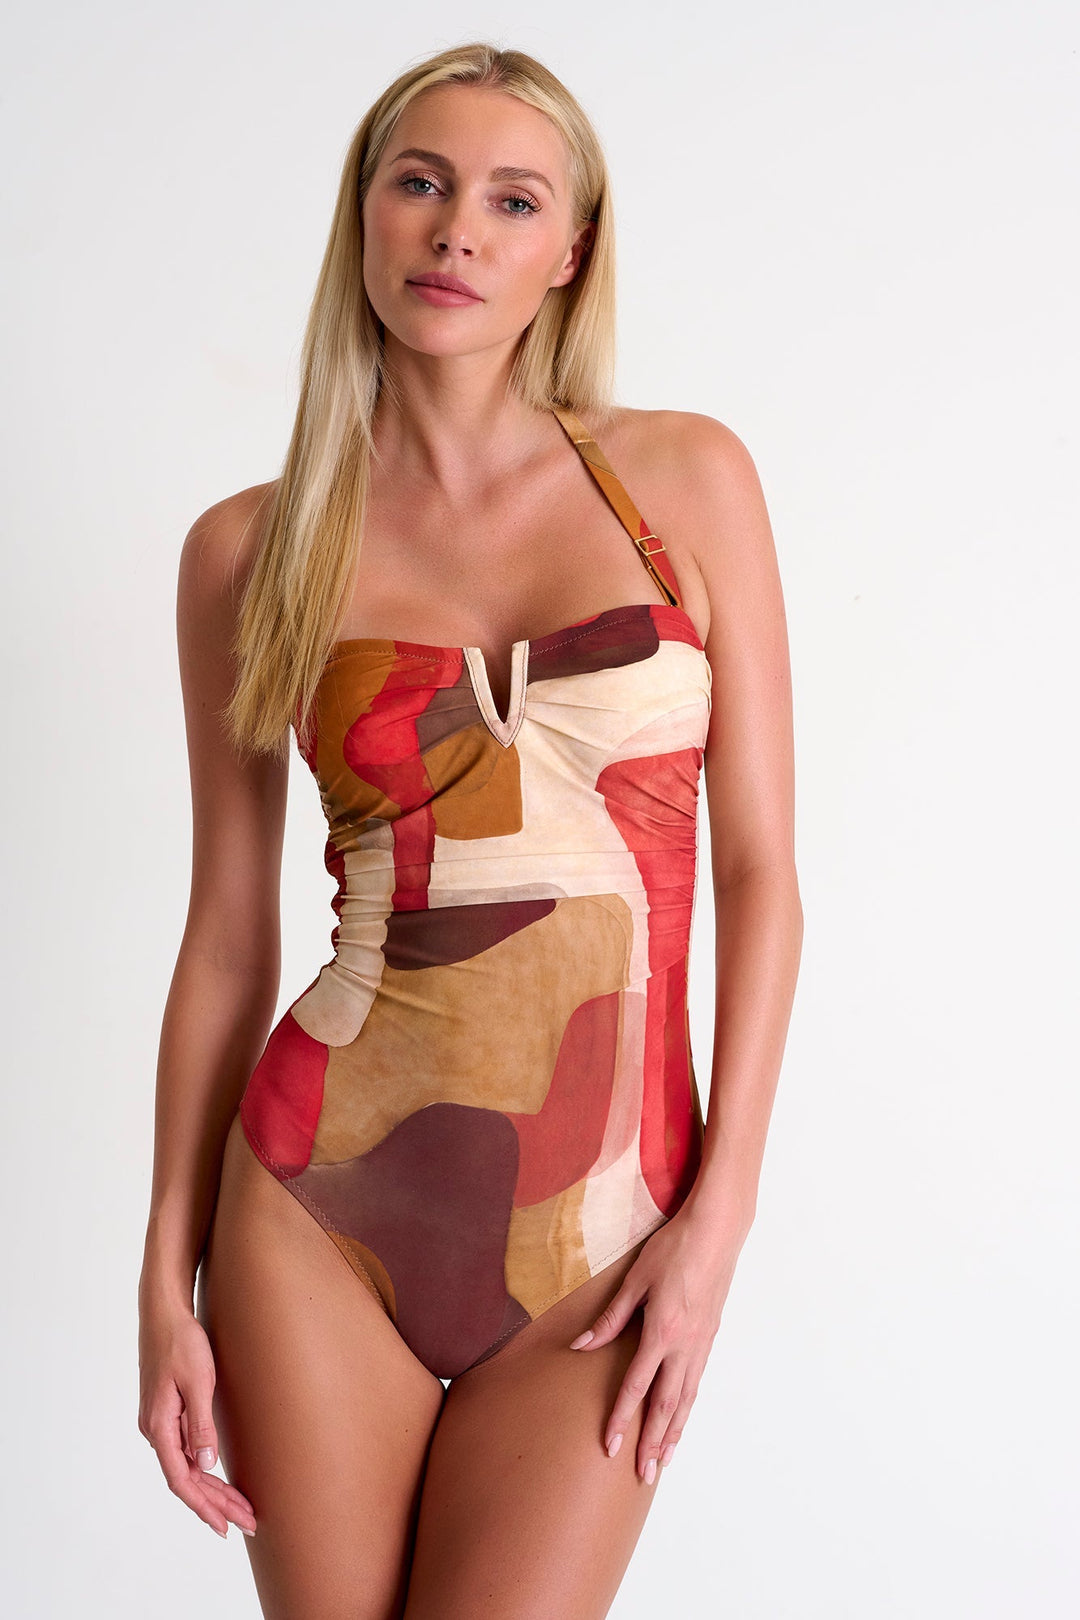 Classic Bandeau One-Piece Swimsuit - 42510-08-956 04 / 956 Sunset / 75% POLYAMIDE, 25% ELASTANE